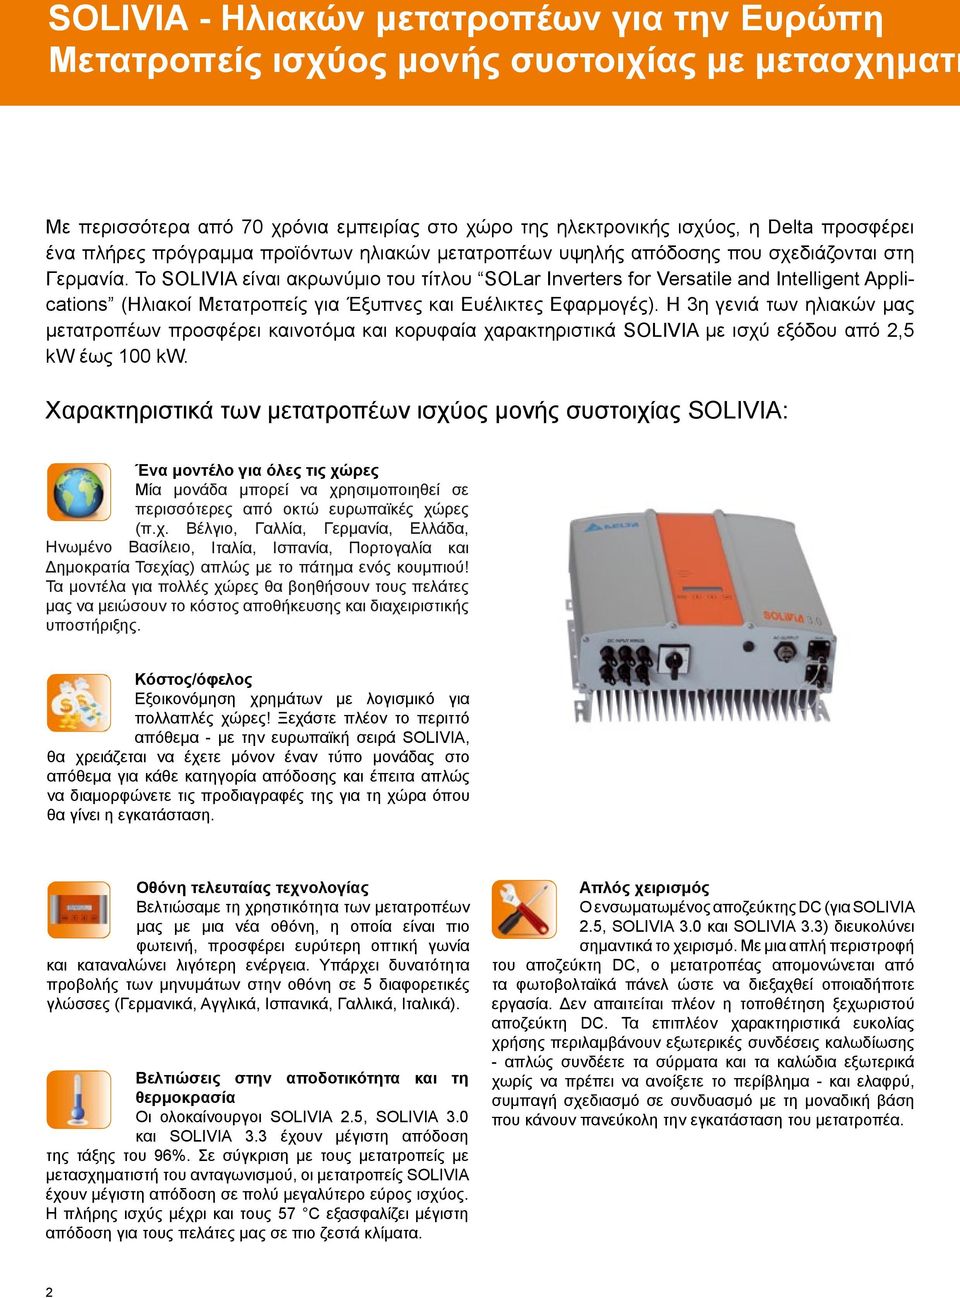 Το SOLIVIA είναι ακρωνύμιο του τίτλου SOLar Inverters for Versatile and Intelligent Applications (Ηλιακοί Μετατροπείς για Έξυπνες και Ευέλικτες Εφαρμογές).